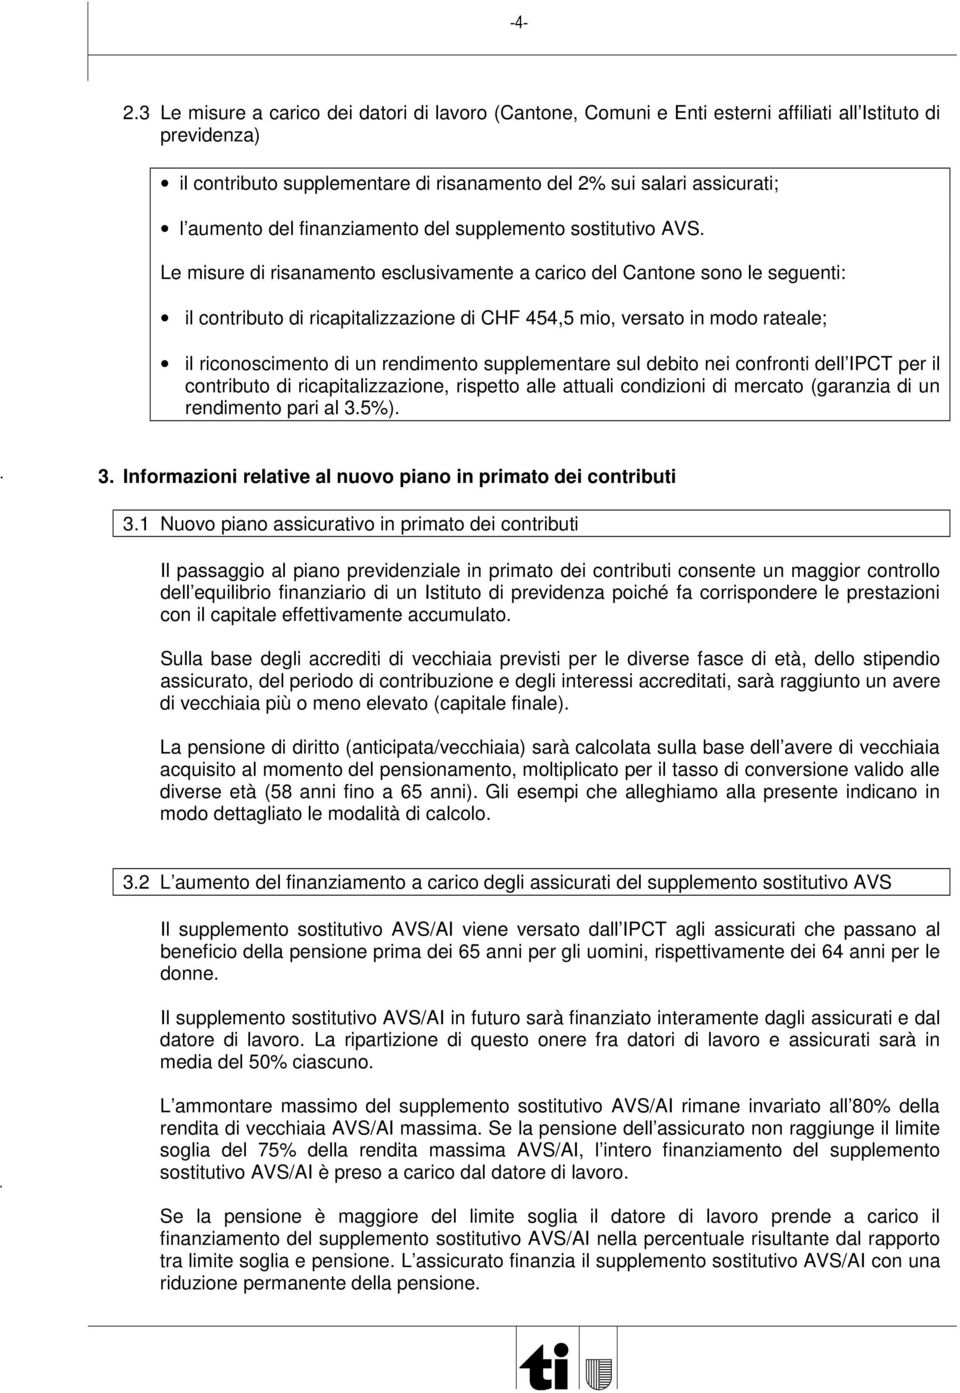 Le misure di risanamento esclusivamente a carico del Cantone sono le seguenti: il contributo di ricapitalizzazione di CHF 454,5 mio, versato in modo rateale; il riconoscimento di un rendimento